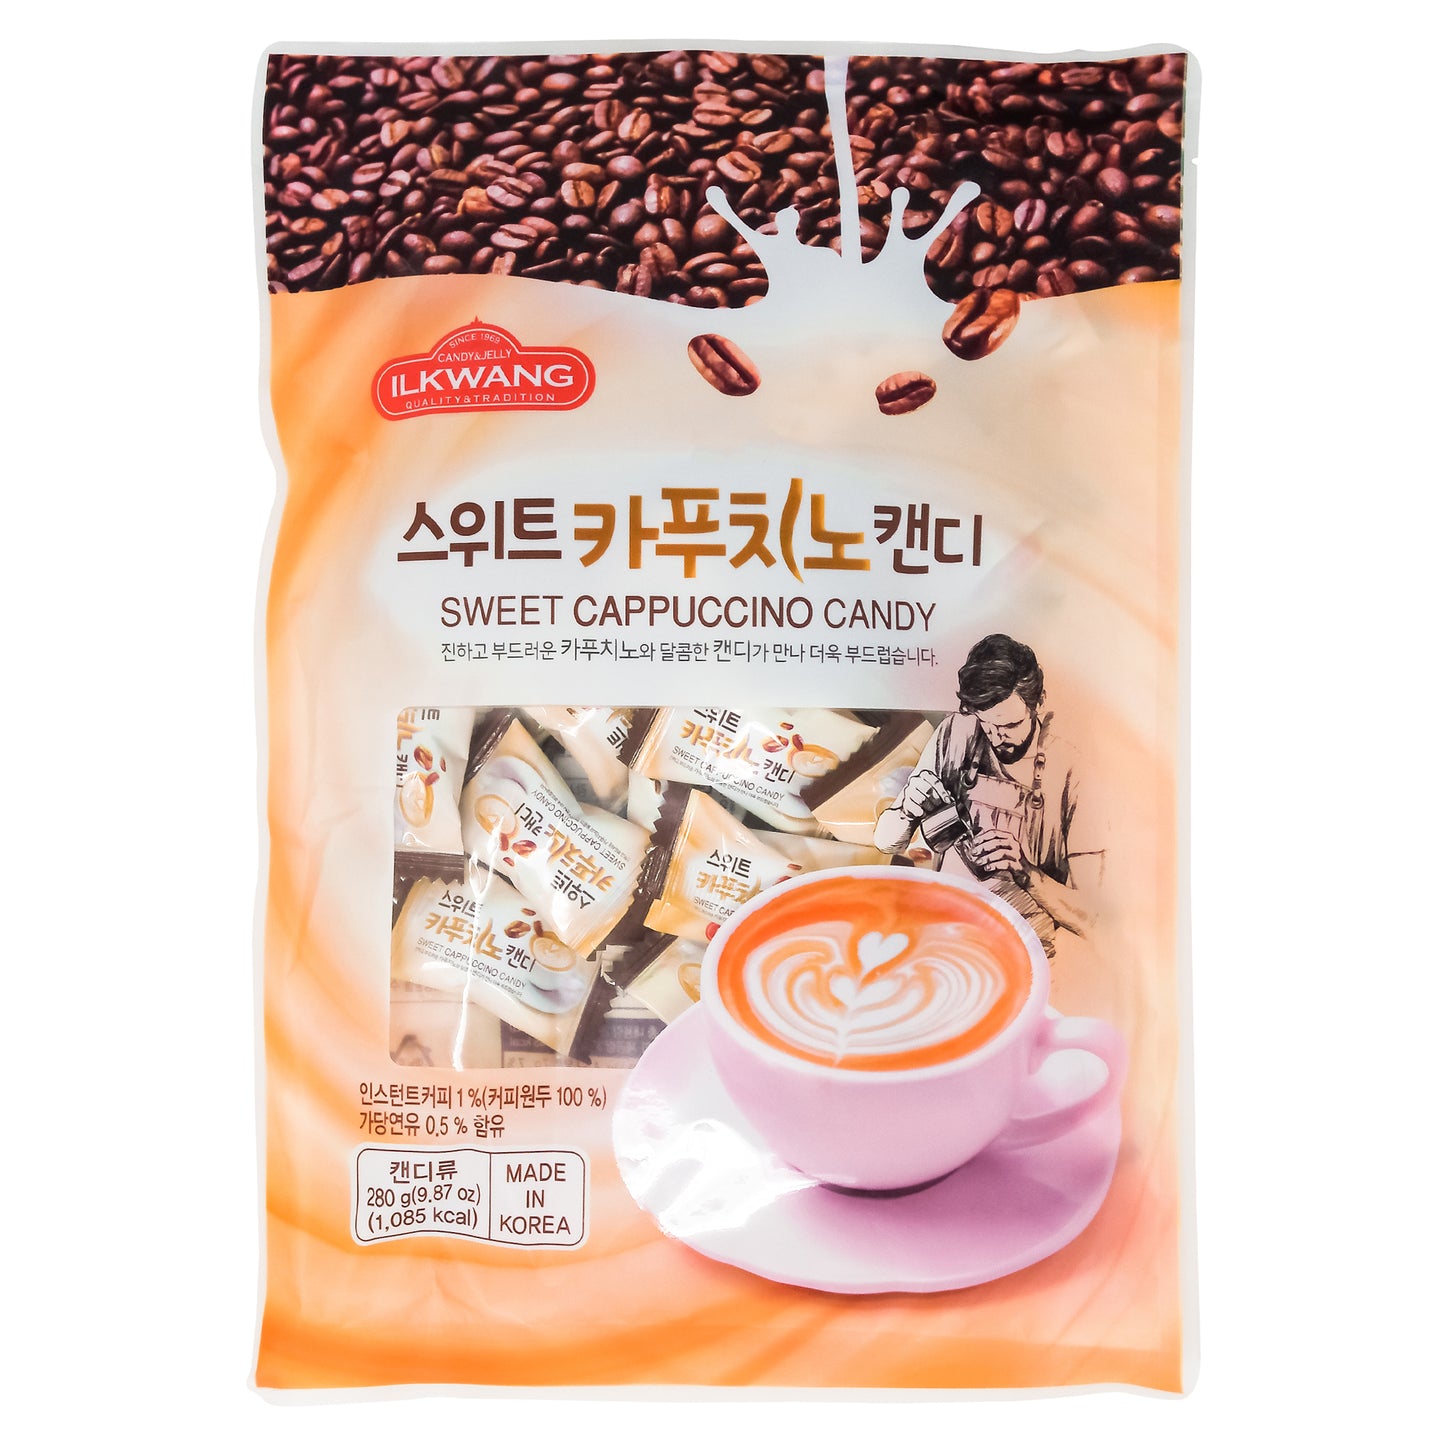 Korea Sweet Cappuccino Candy Drops  9.87oz ( 280g ) X 2, 3, 4, 5 ( Ilkwang )